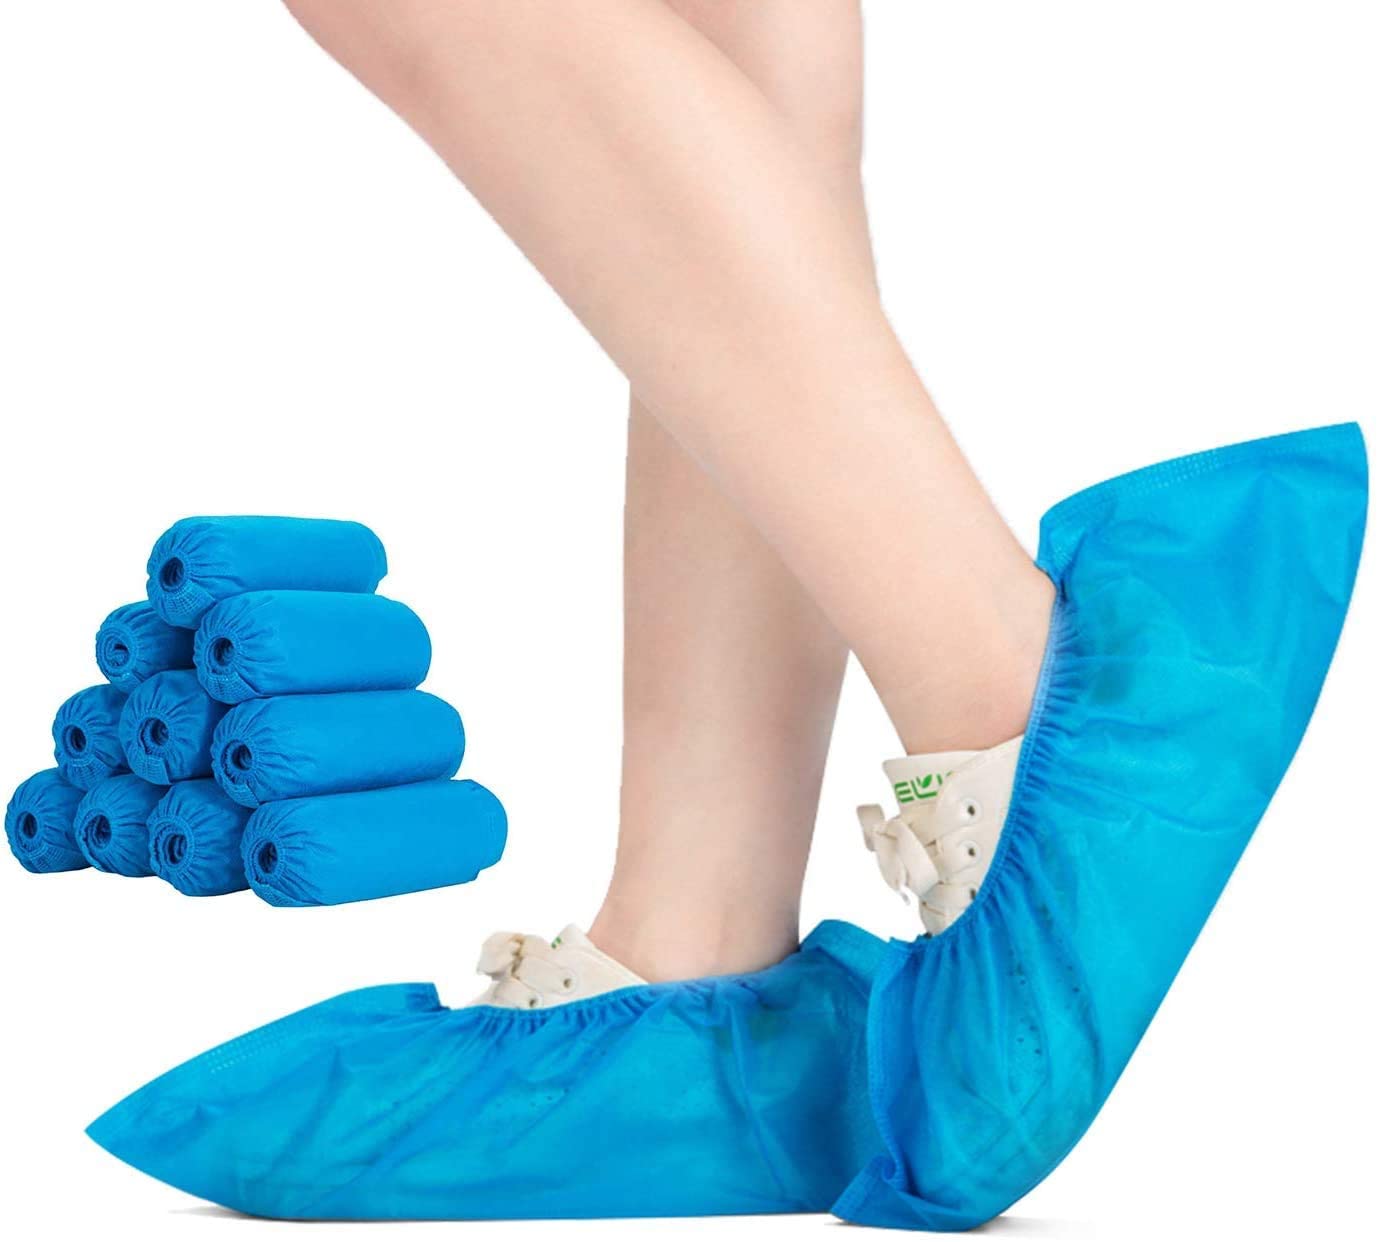 Cubrezapatos de plástico azul desechable para lluvia